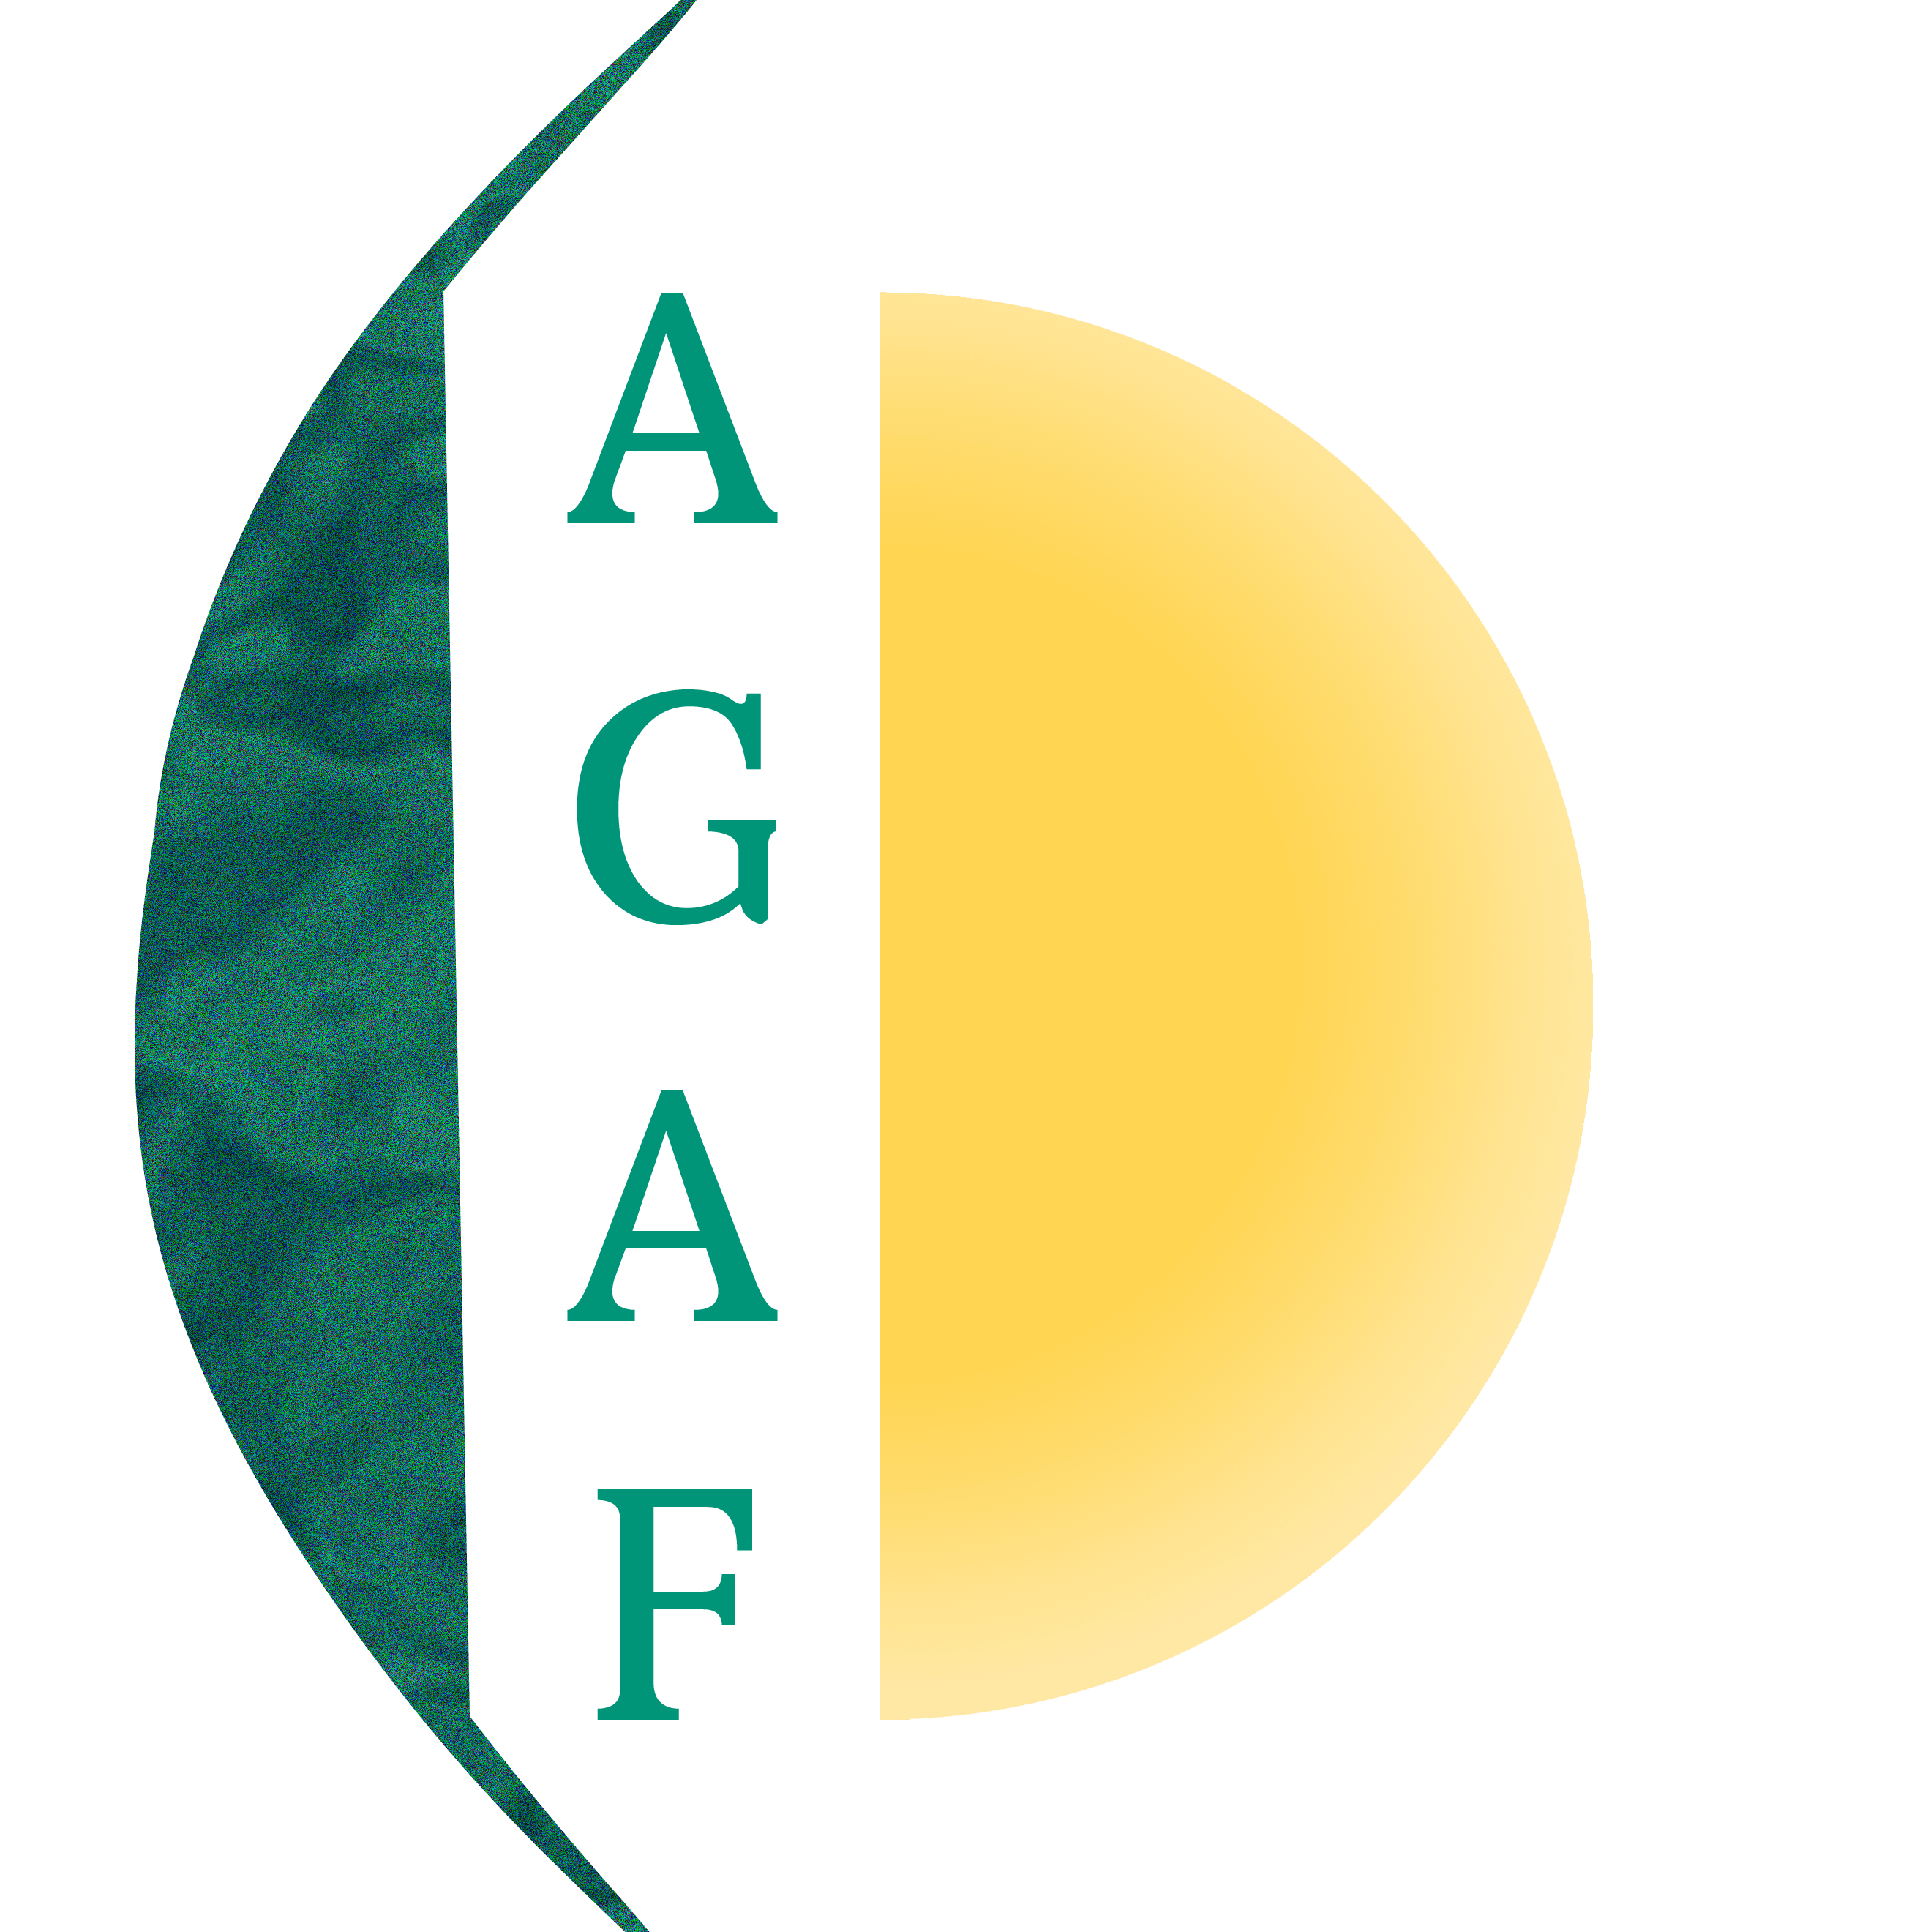 AGAF - Asociación de Glaucoma para Afectados y Familiares